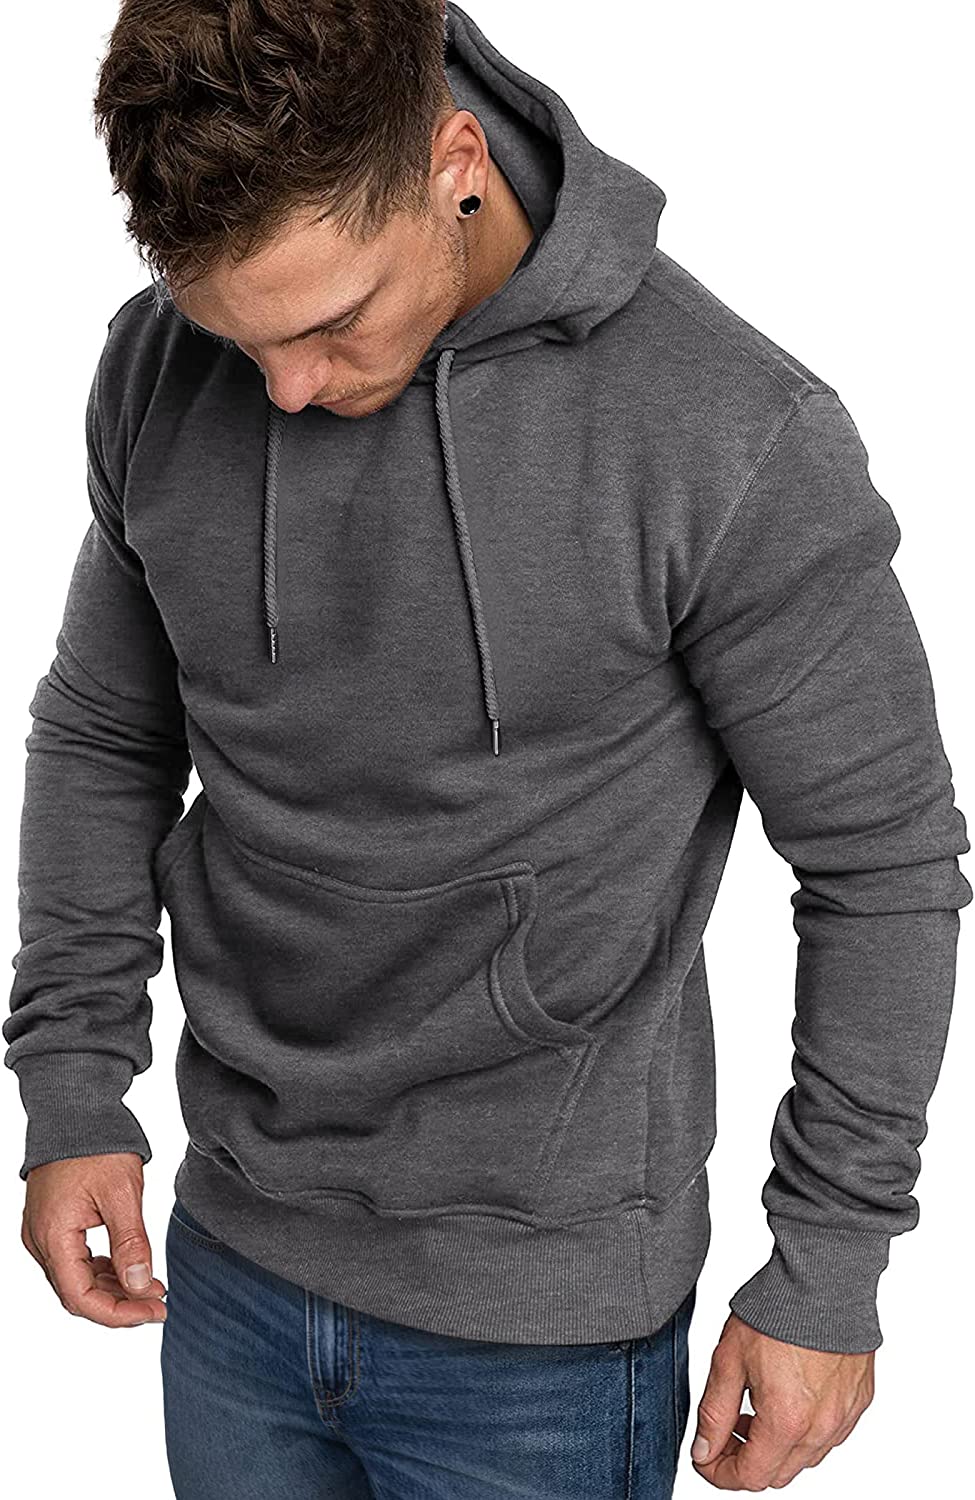 COOFANDY Men's Casual Hoodie Lightweight Long Sleeve Sports Hooded Sweatshirts Hoodies COOFANDY Store Small Dark Grey 